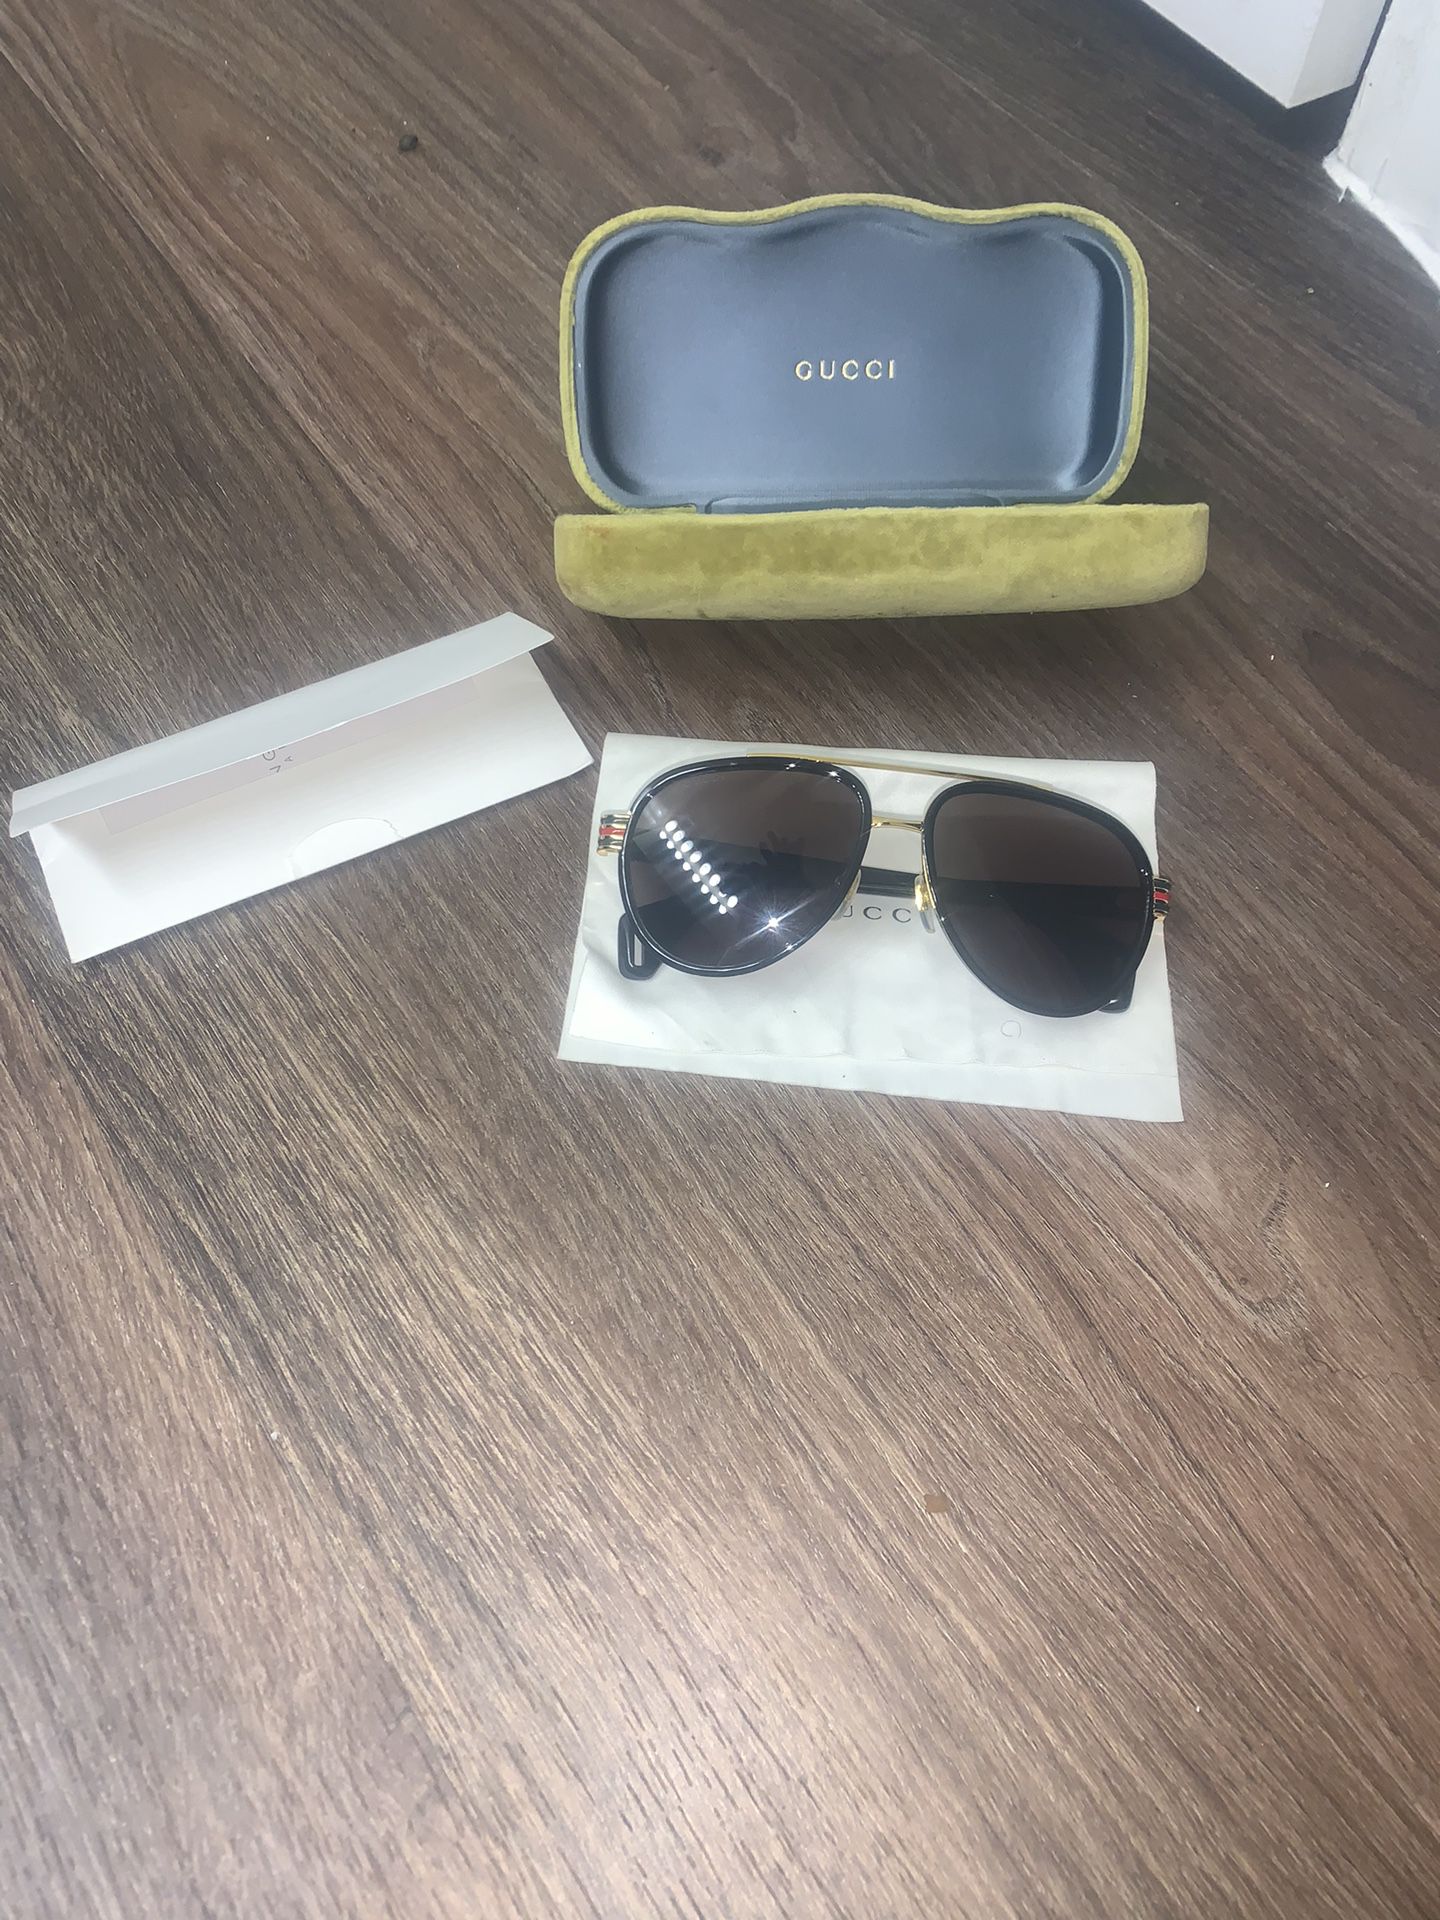 Gucci Aviator Sunglasses ( Read Description )